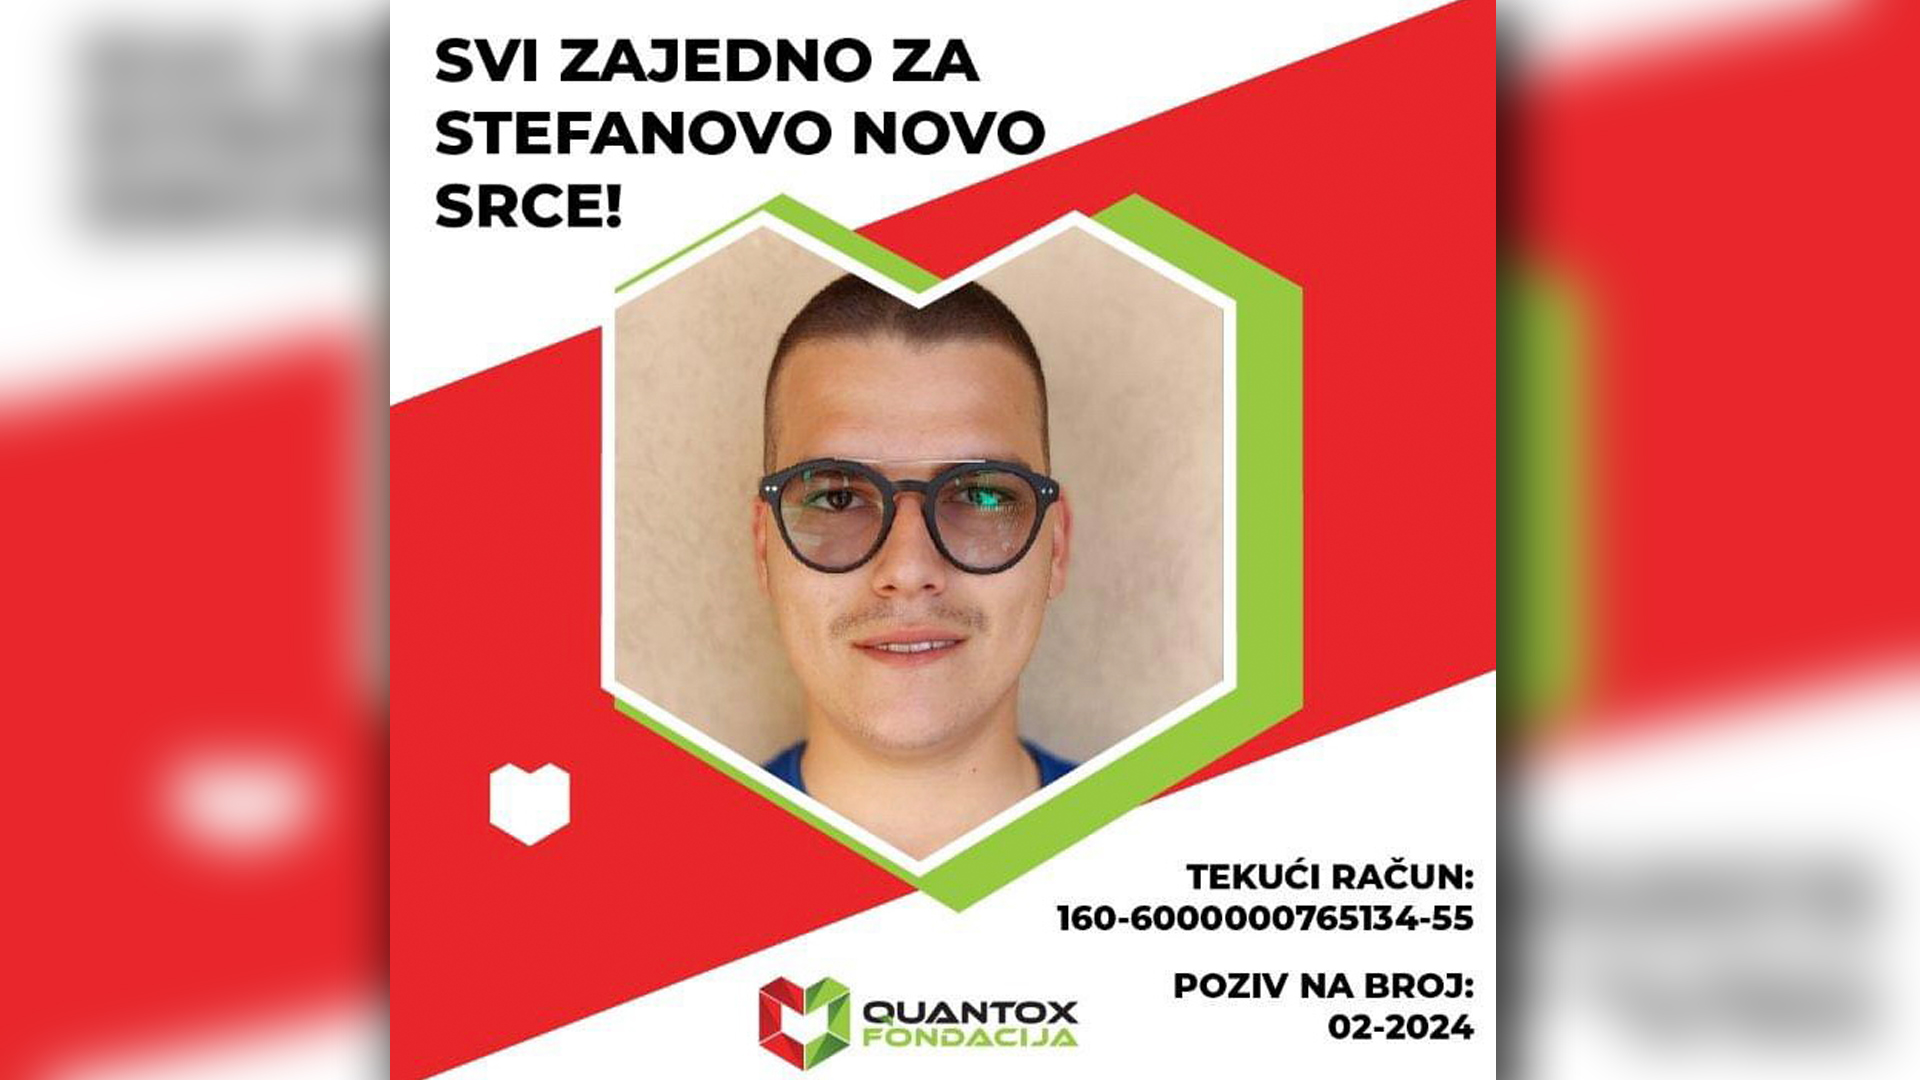 HITNO!!! Pomozimo Stefanu Sredoviću da dobije novo srce!